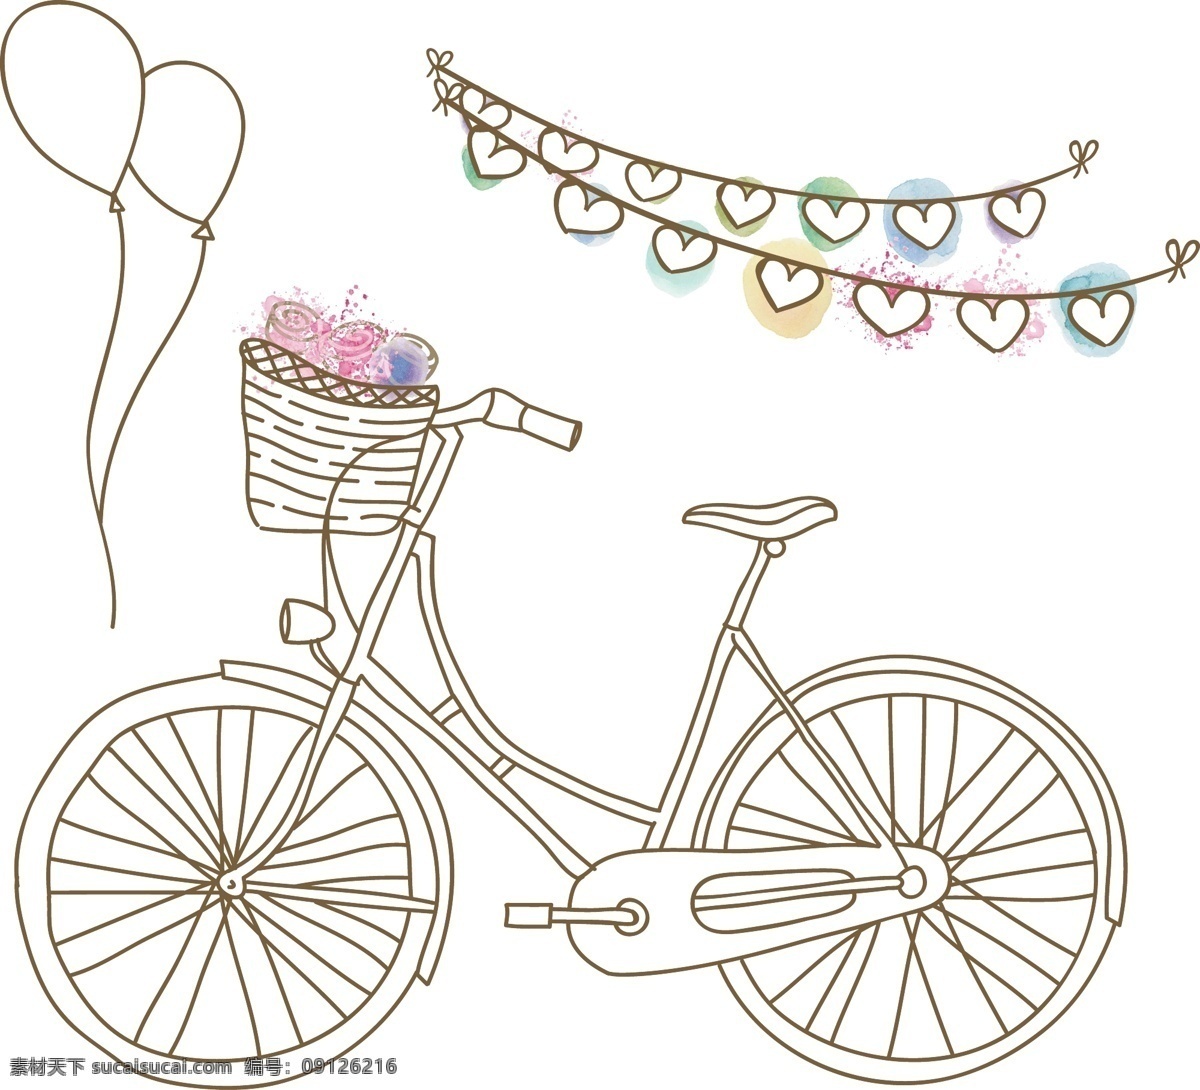 爱心 气球 单车 爱情 结婚 情人节 矢量 爱心气球 气球单车 气球自行车 爱心自行车 自行车 结婚自行车 情人节自行车 结婚庆素材 生活百科 学习用品